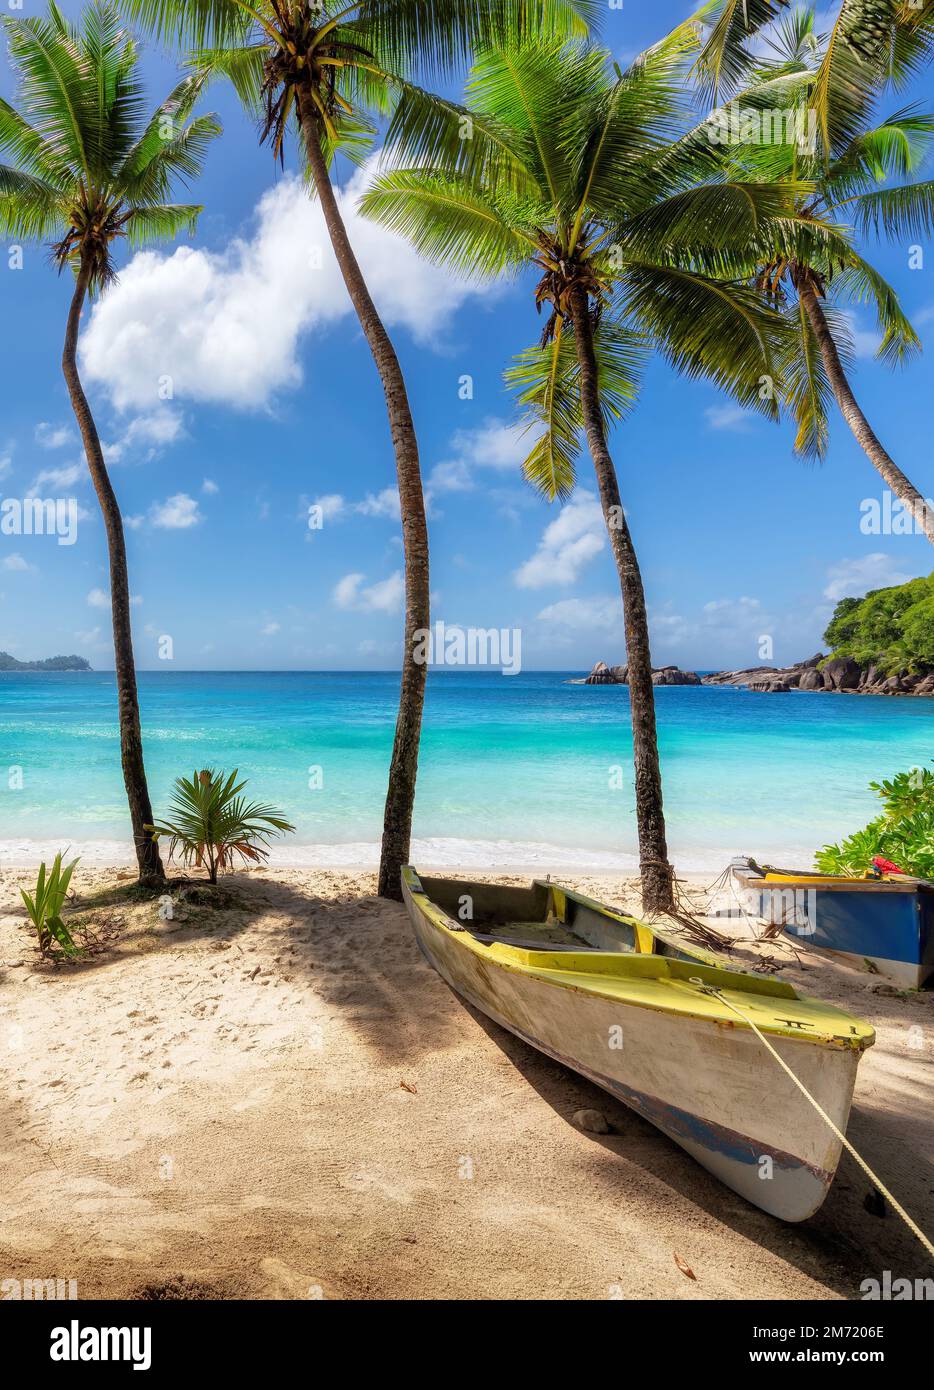 Spiaggia tropicale soleggiata con palme da cocco e il mare turchese sull'isola dei Caraibi. Foto Stock